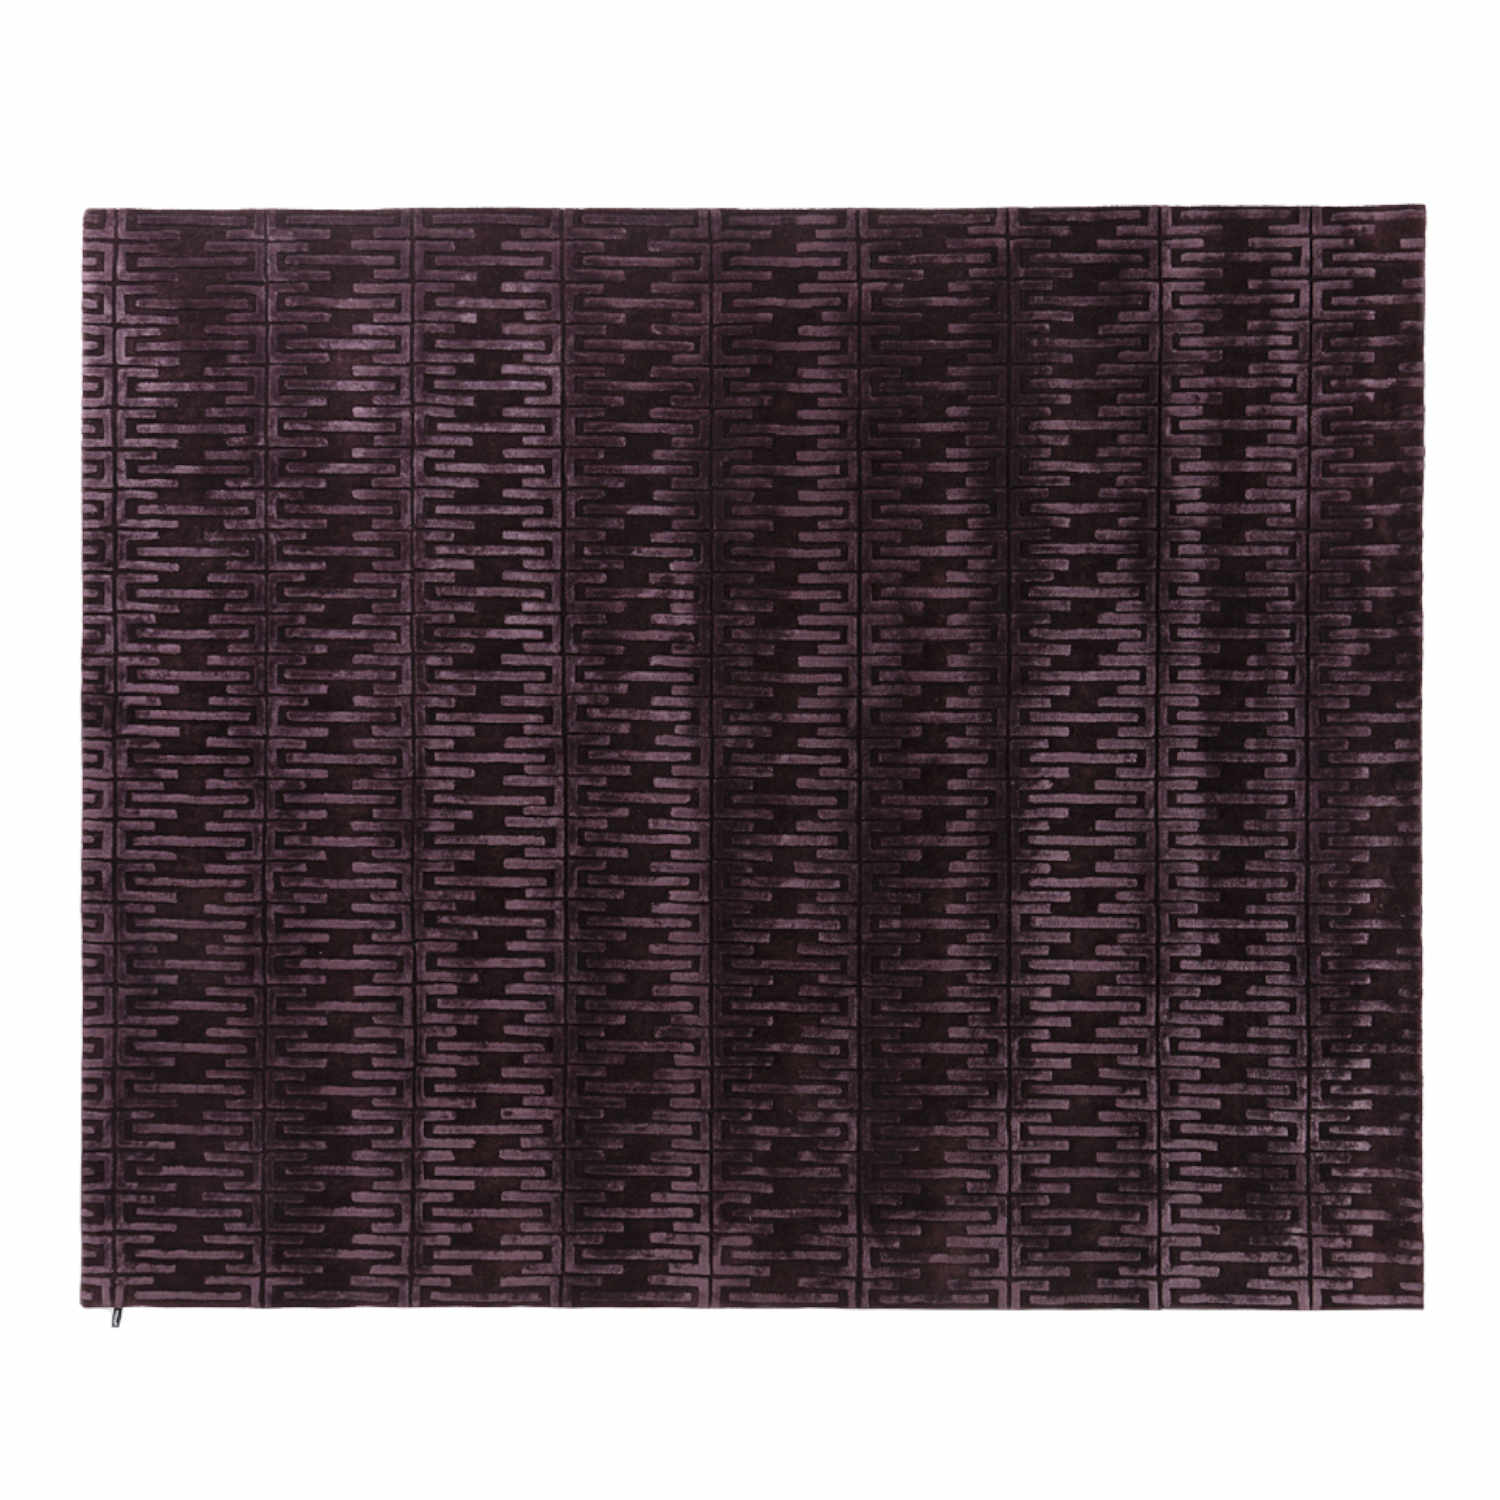 Starshade Teppich, Grösse 170 x 240 cm, Farbe taupe von miinu